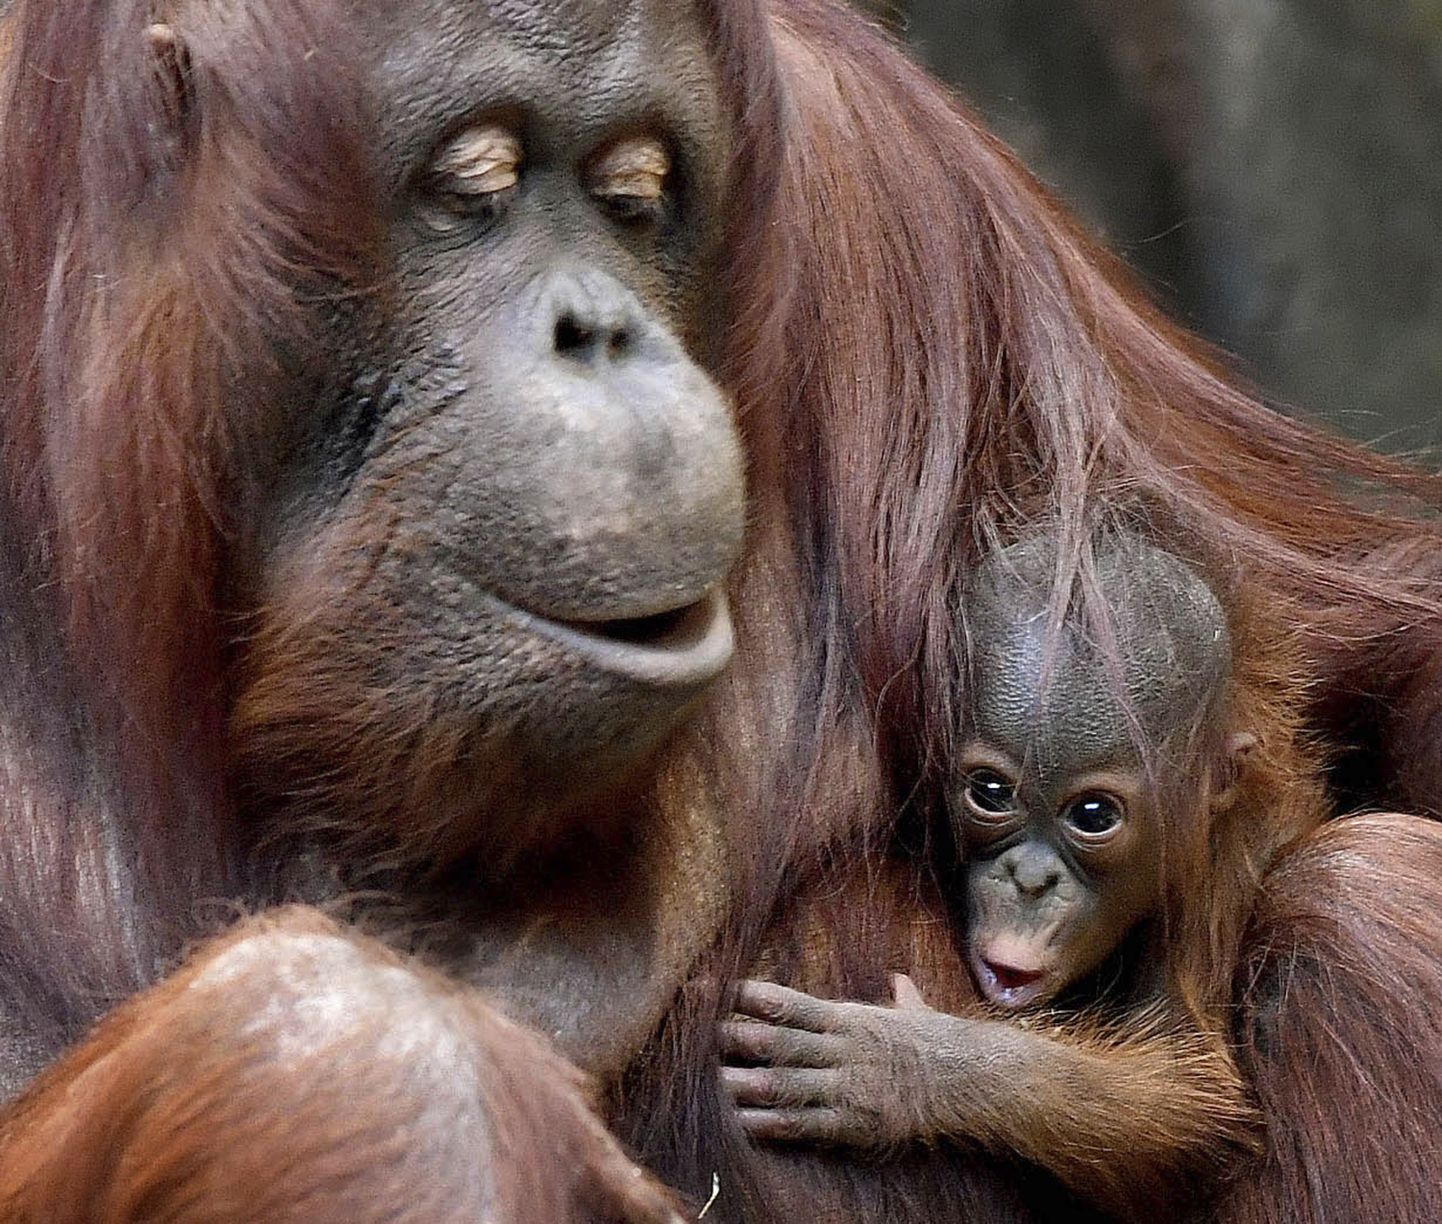 Rahvusvaheline ülevaateuuring näitab, et enamikke maailma primaate ähvardab väljasuremisoht.